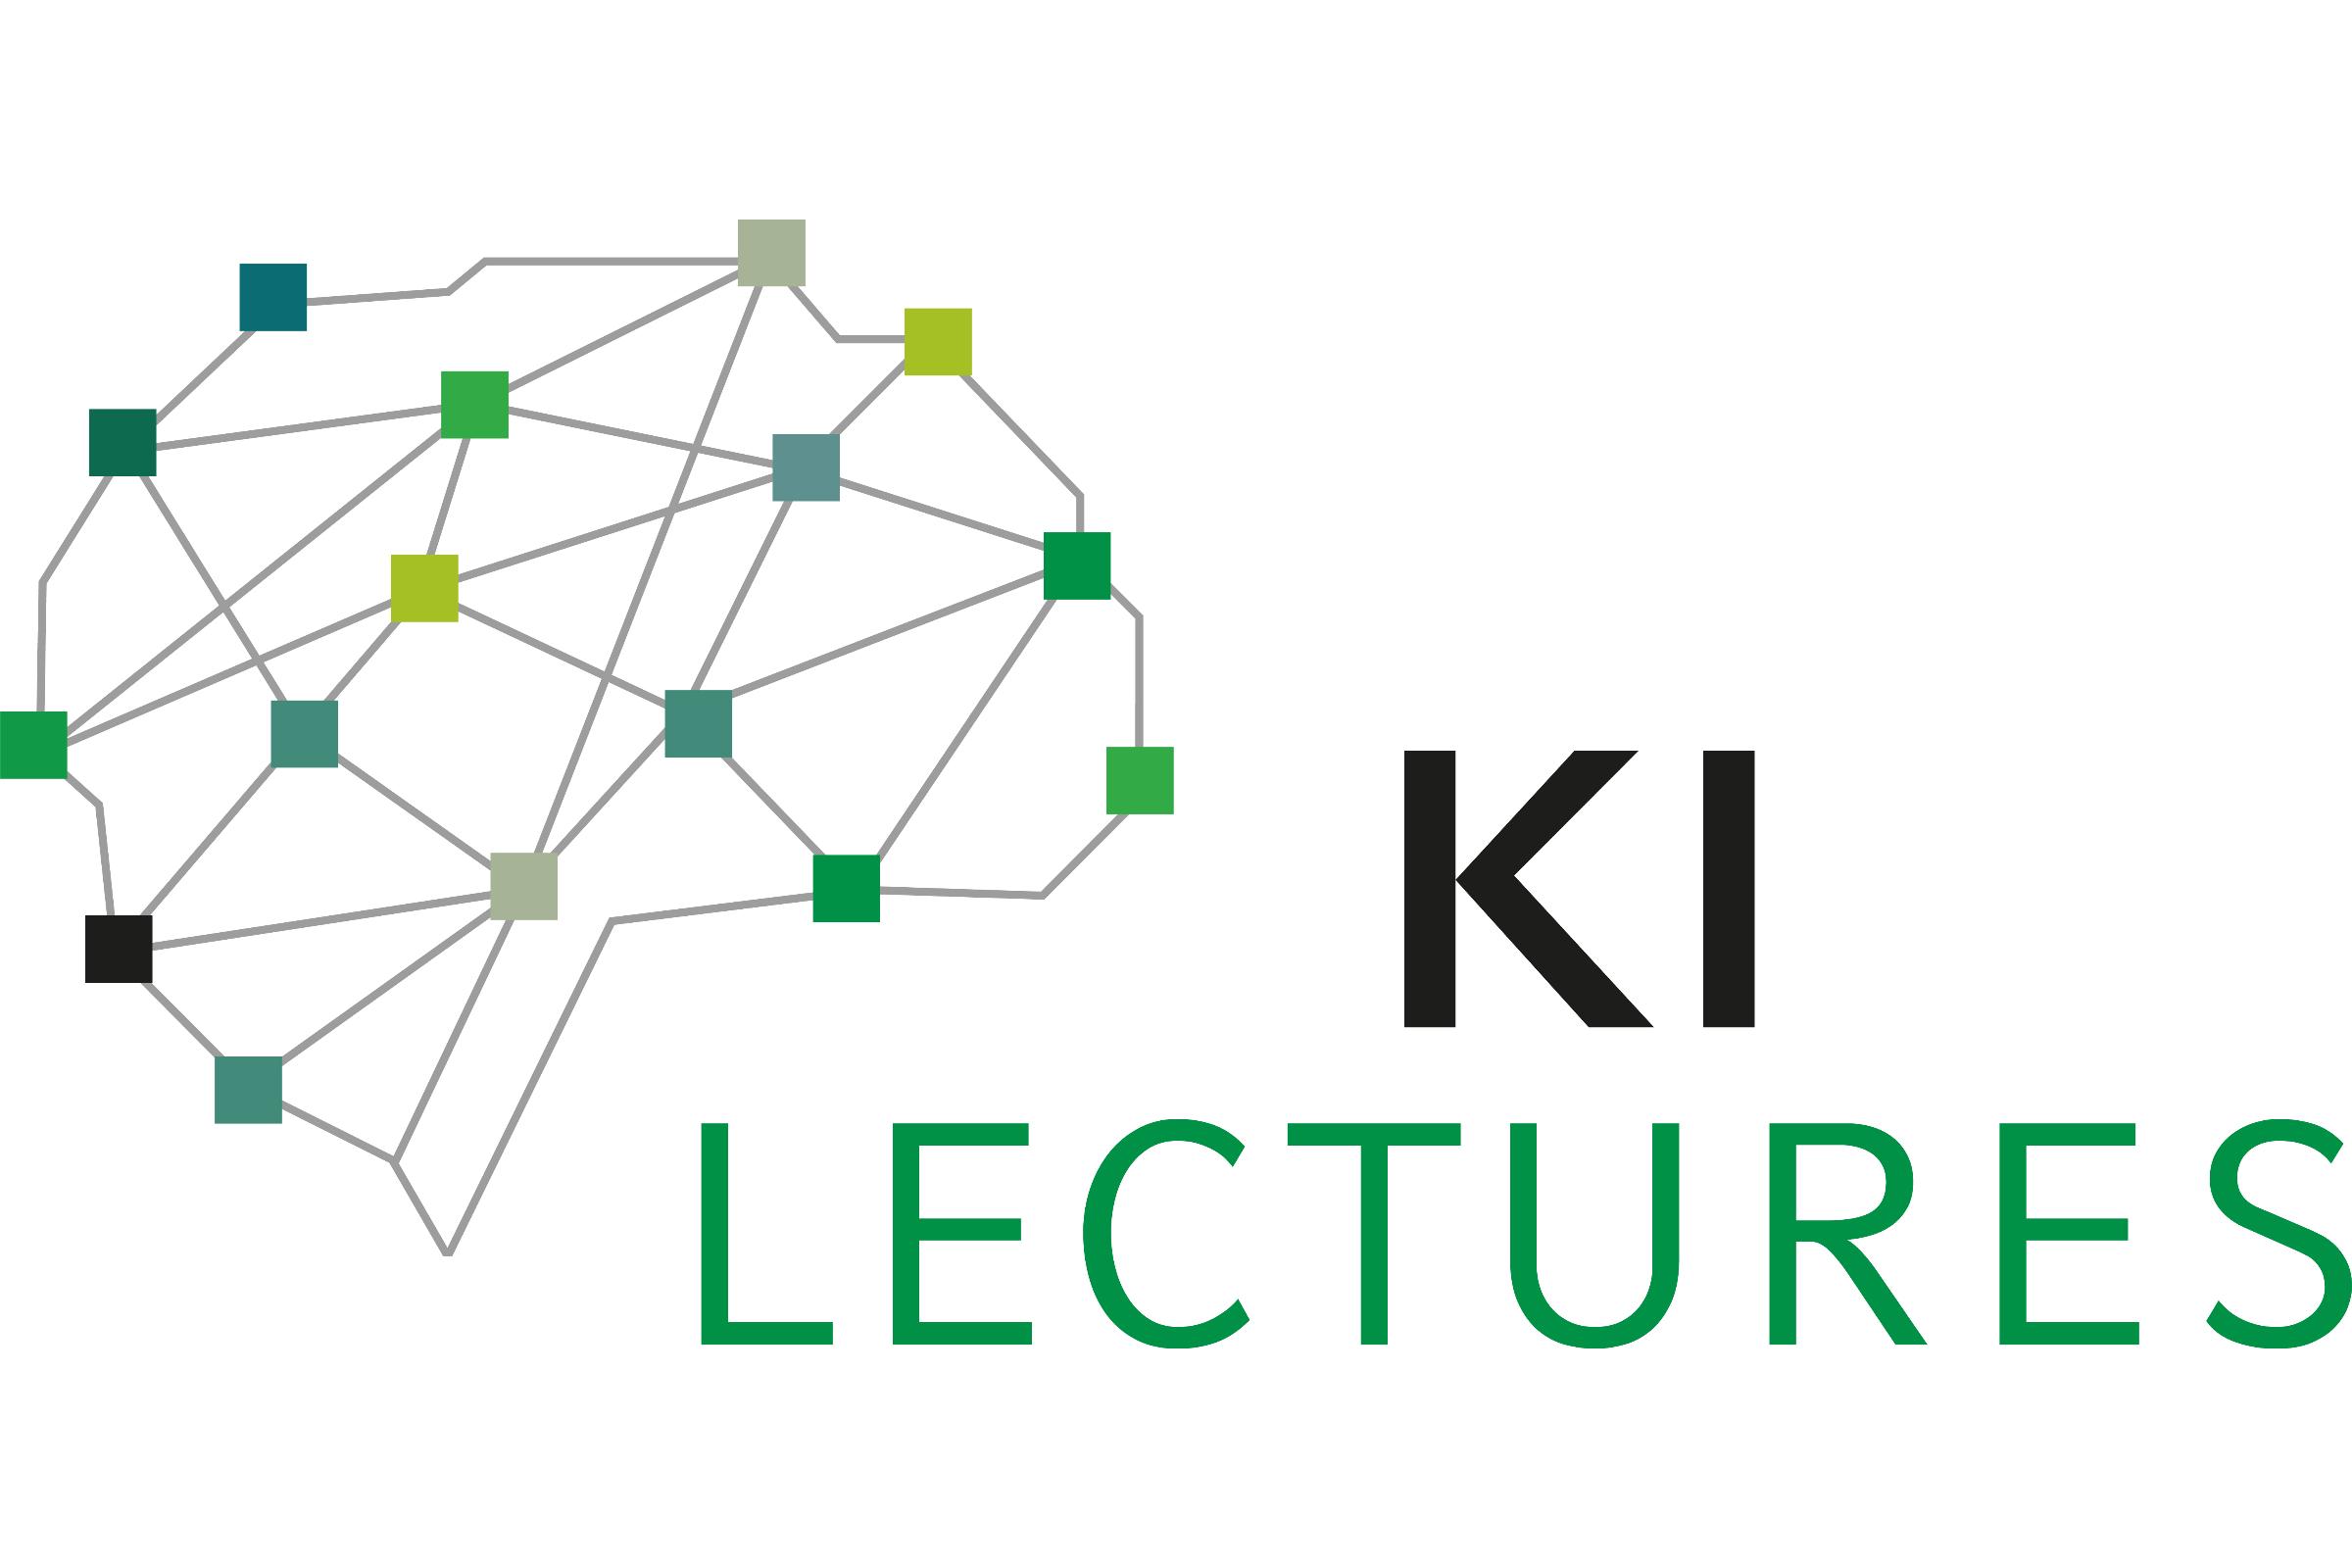 Logo der KI Lectures. Neben dem Schriftzug "KI Lectures" sind kleinere Quadrate in unterschiedlichen Farben zu sehen, die alle miteinander durch Linien verbunden sind und so ein Netz bilden.